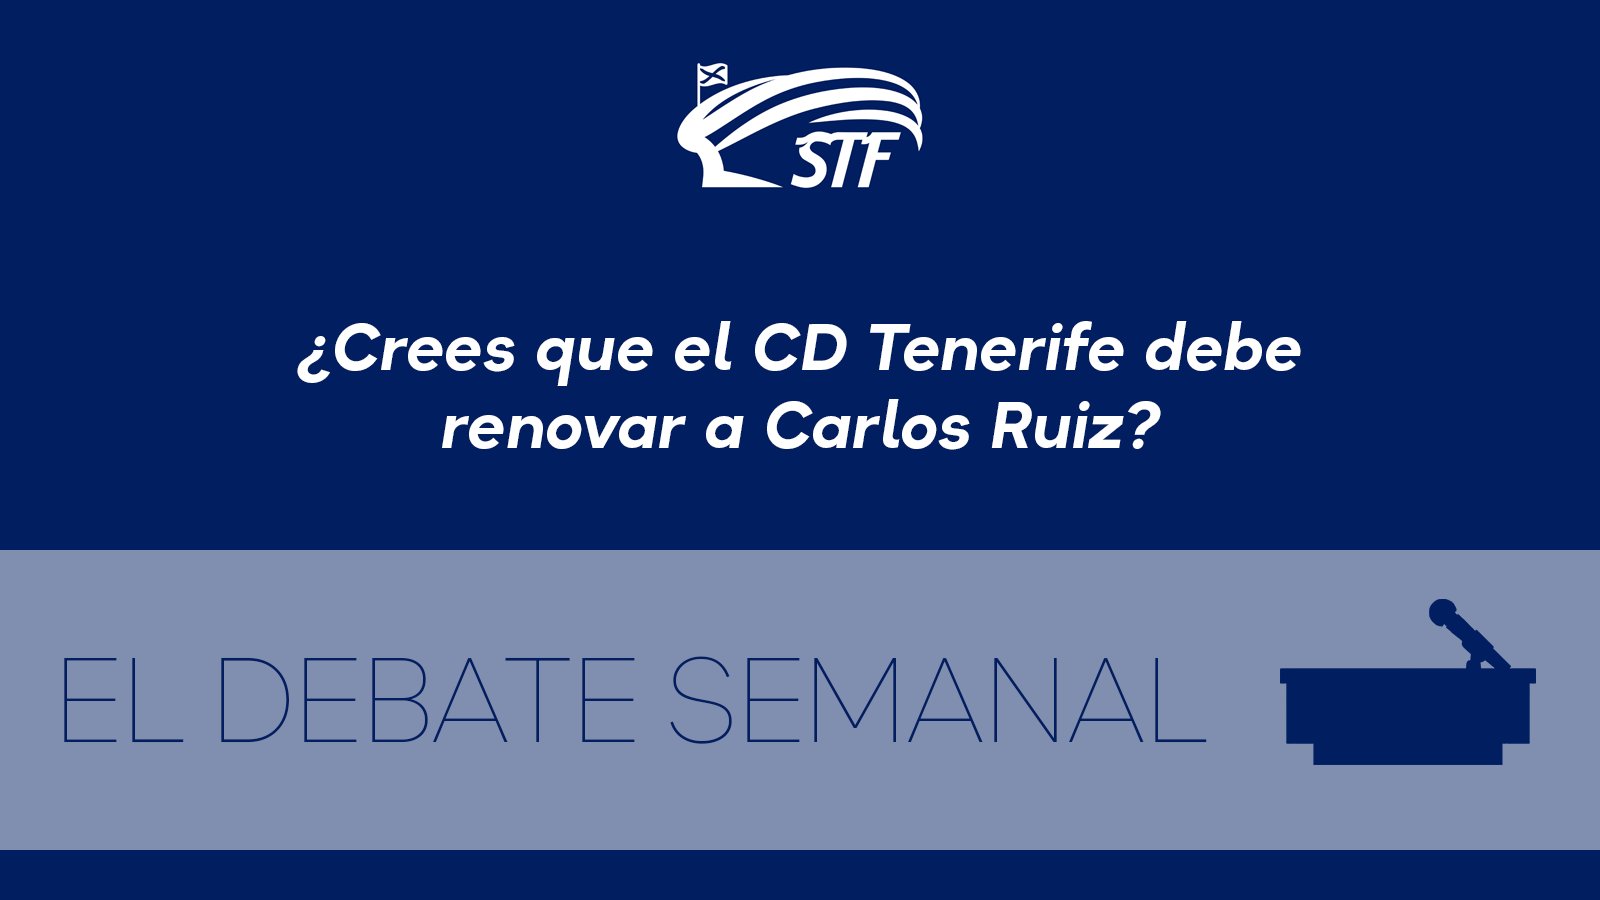 El Debate Semanal: ¿Crees que el CD Tenerife debe renovar a Carlos Ruiz? El 97,6% dice sí